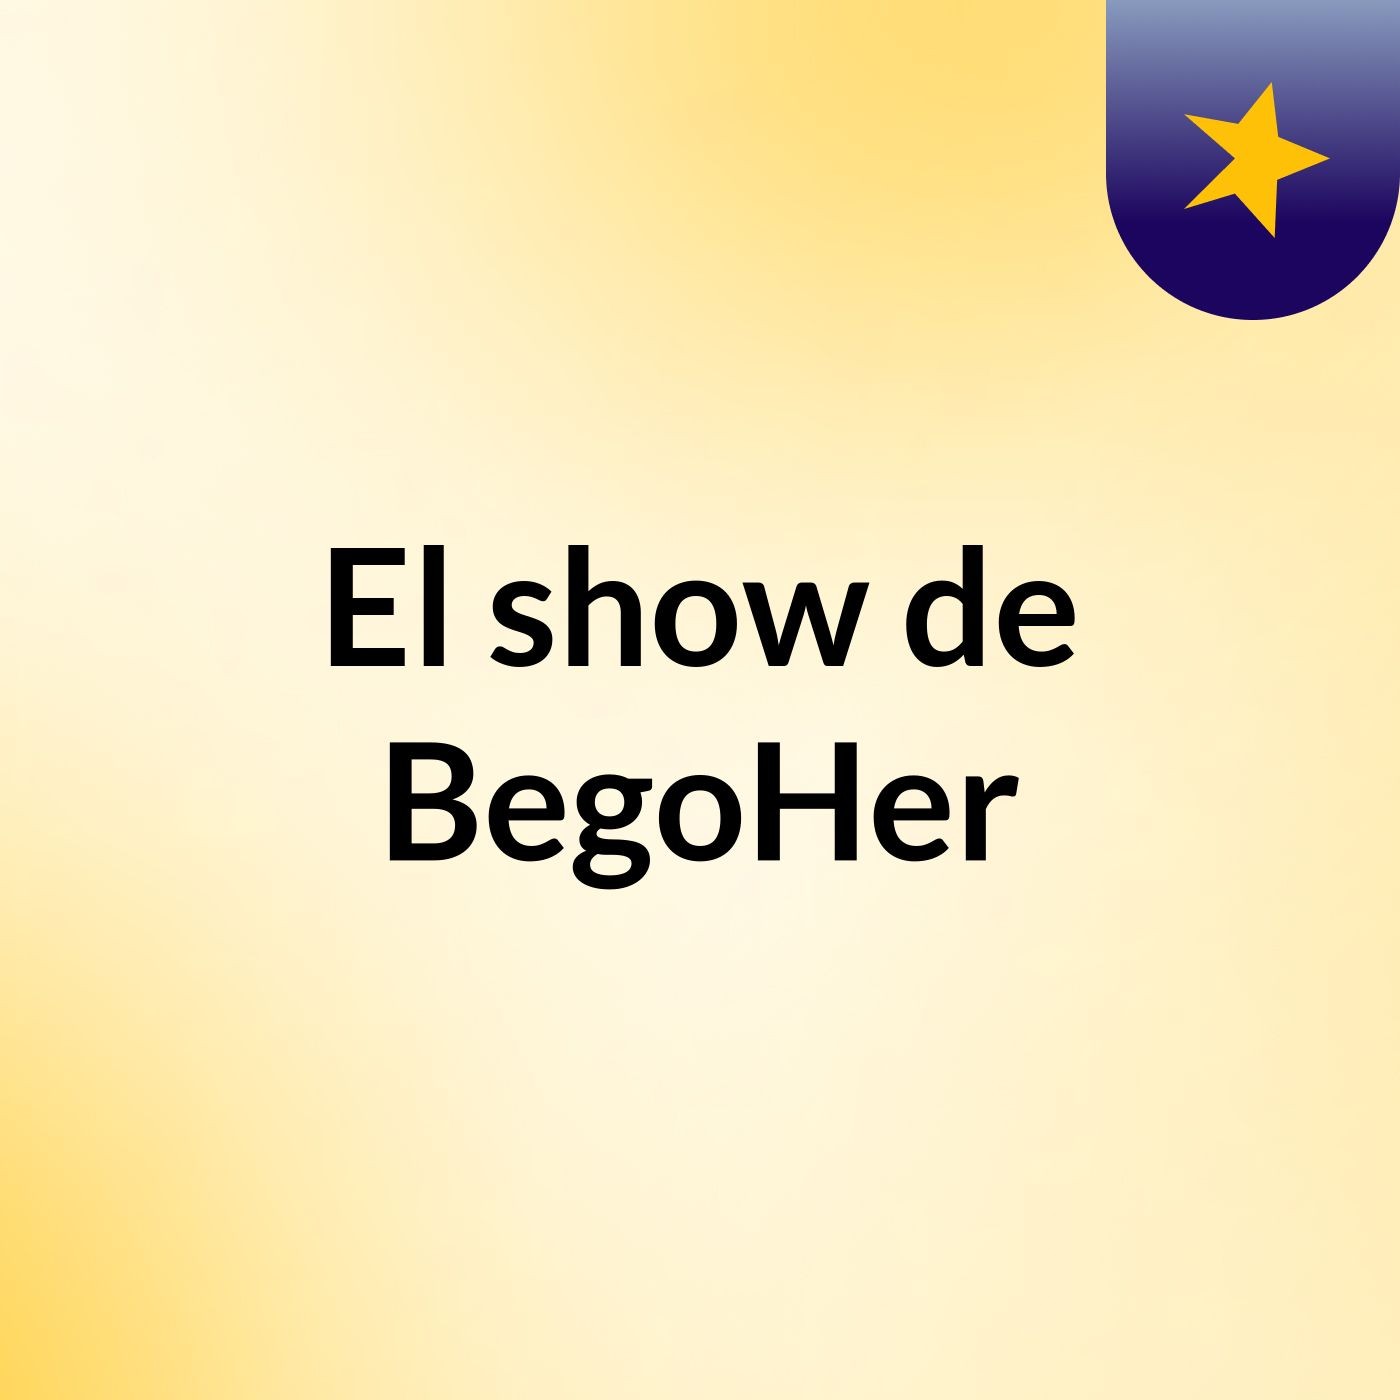 El show de BegoHer